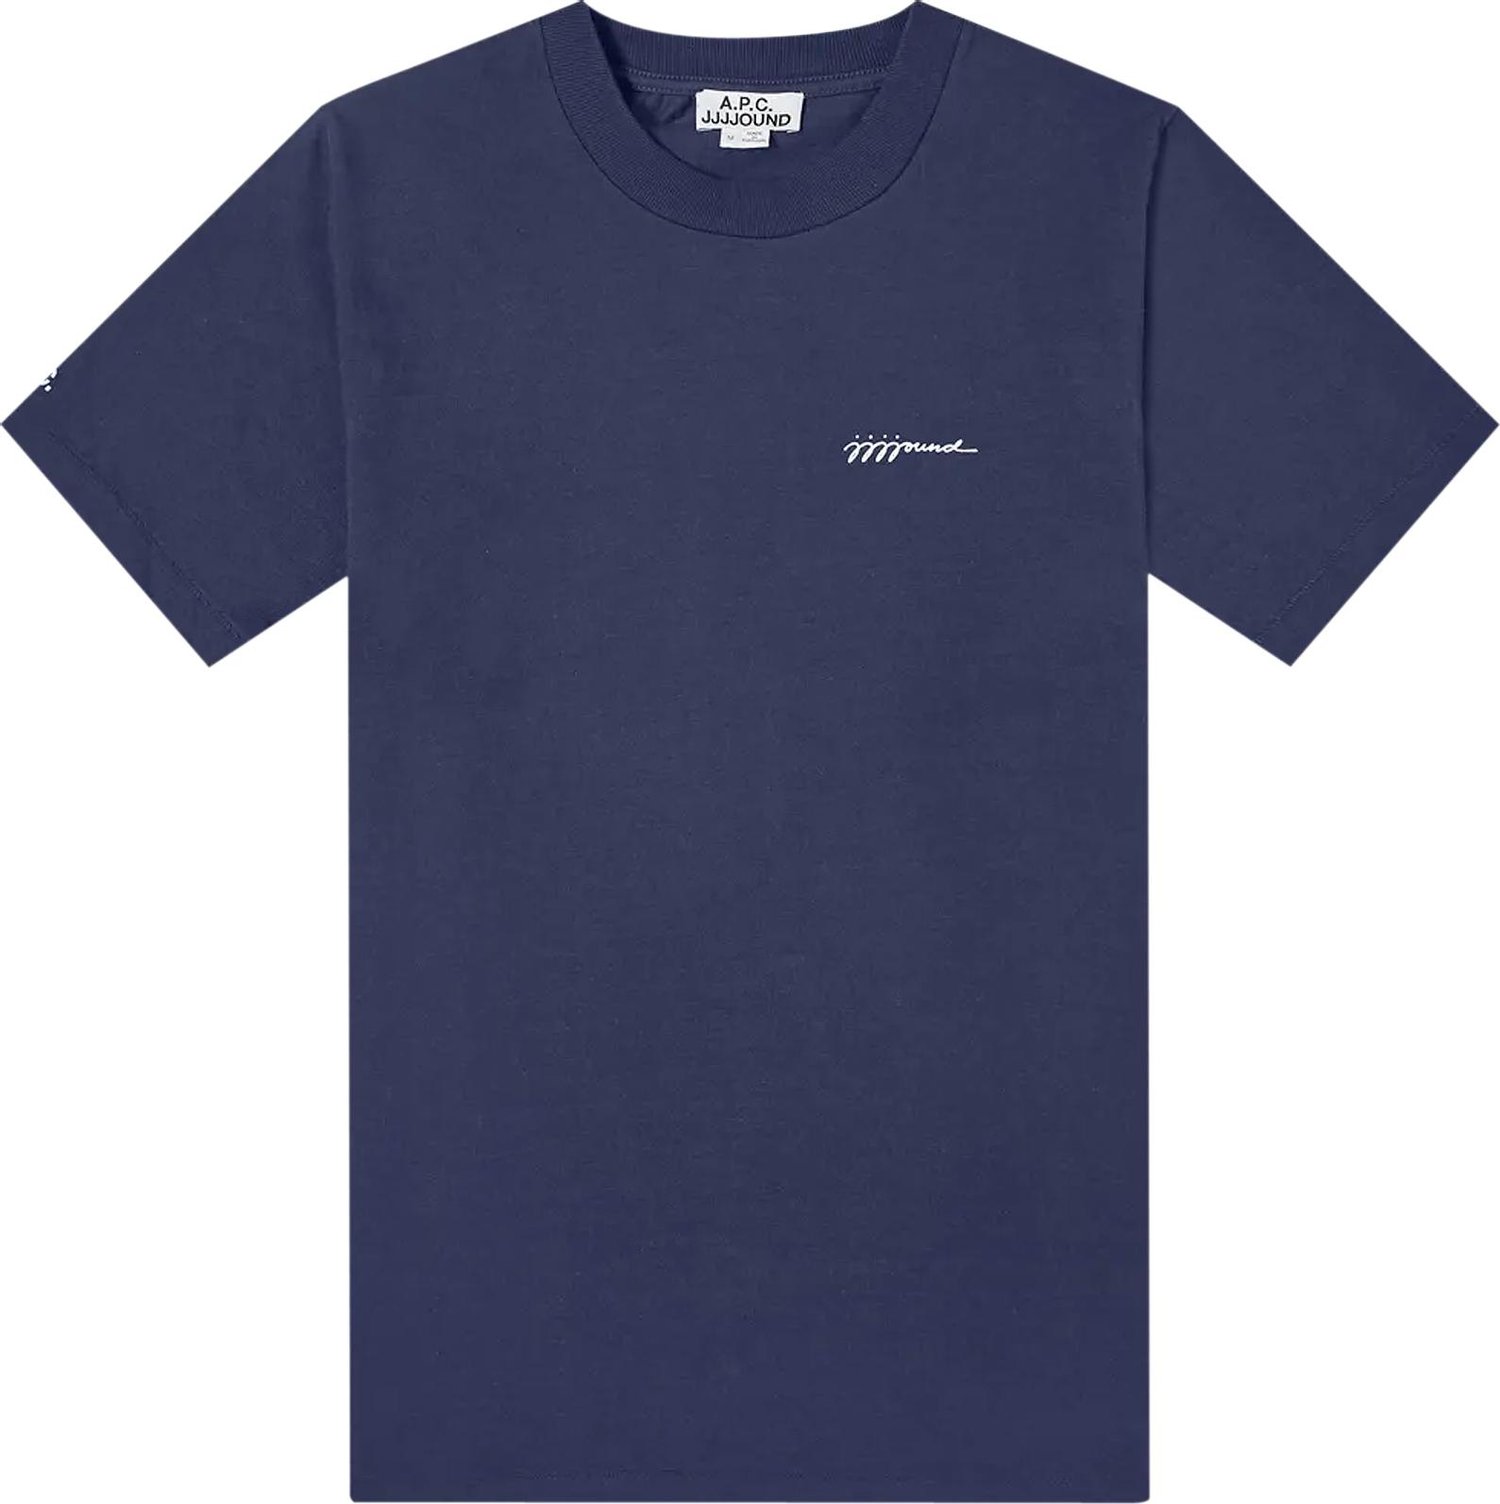 Buy A.P.C. x JJJJound Logo T-Shirt 'Dark Navy' - COEAV H26851 DARK | GOAT